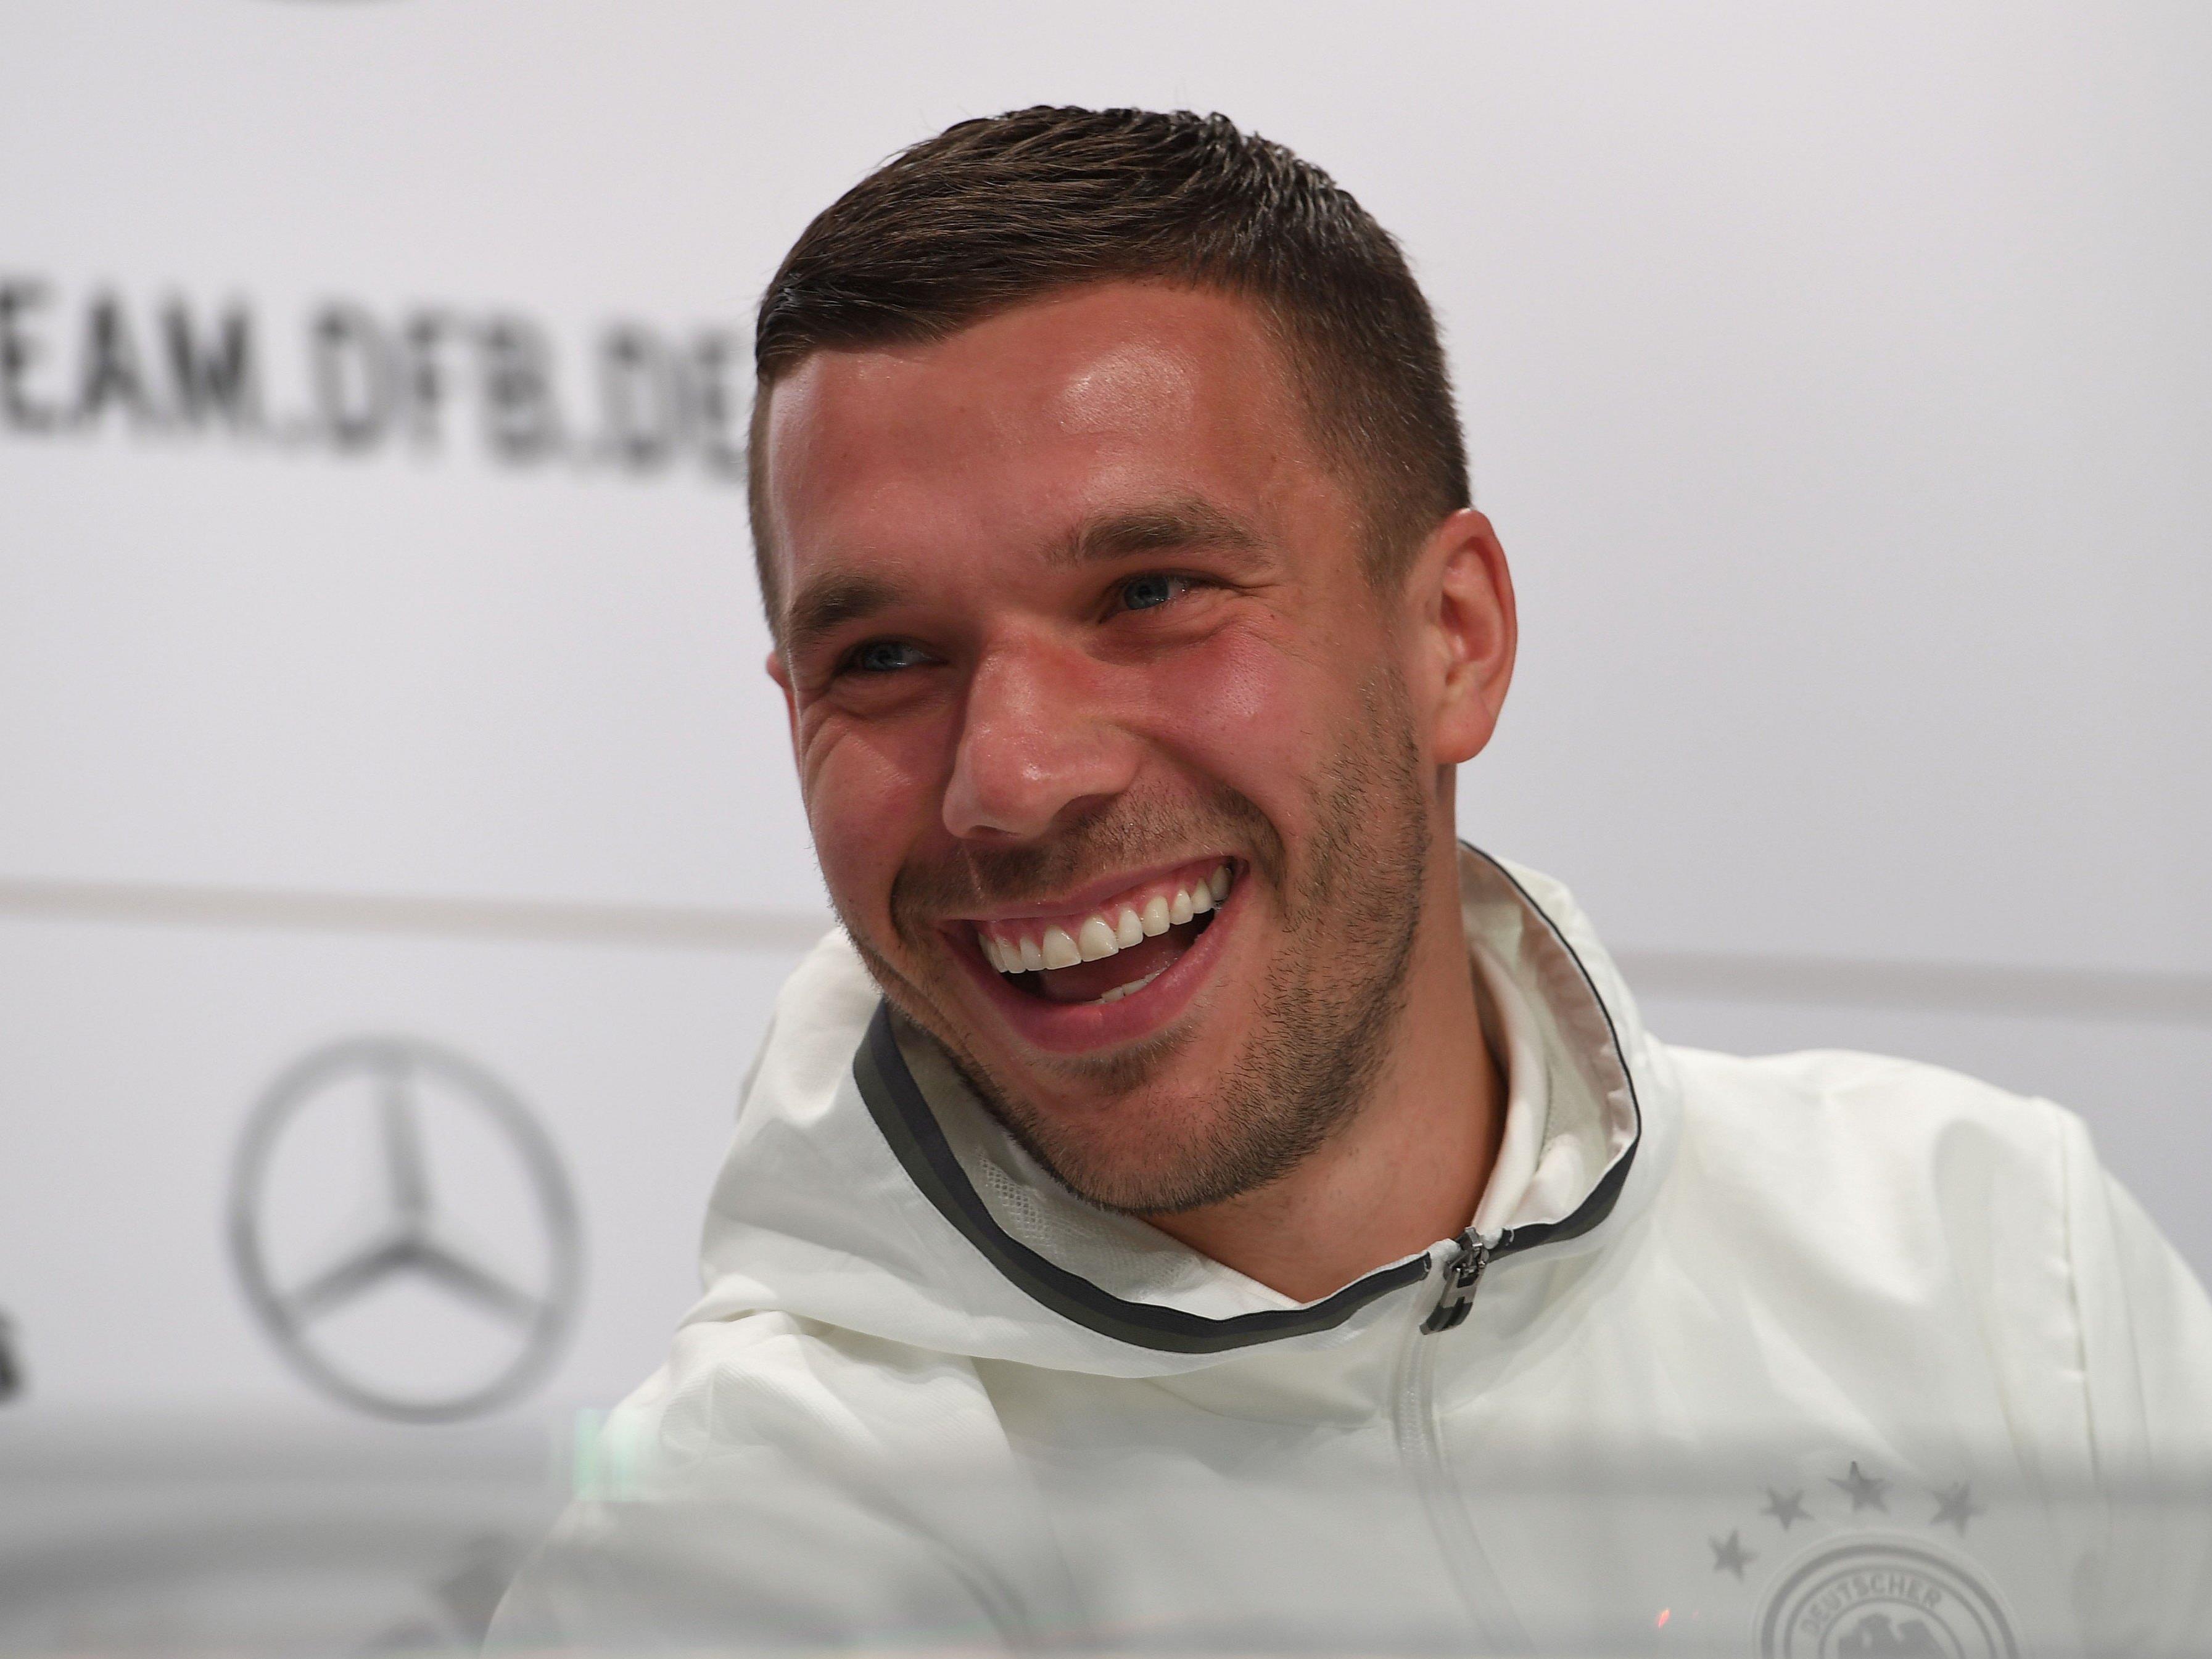 Lukas Podolski sorgte für Lacher auf der Pressekonferenz.